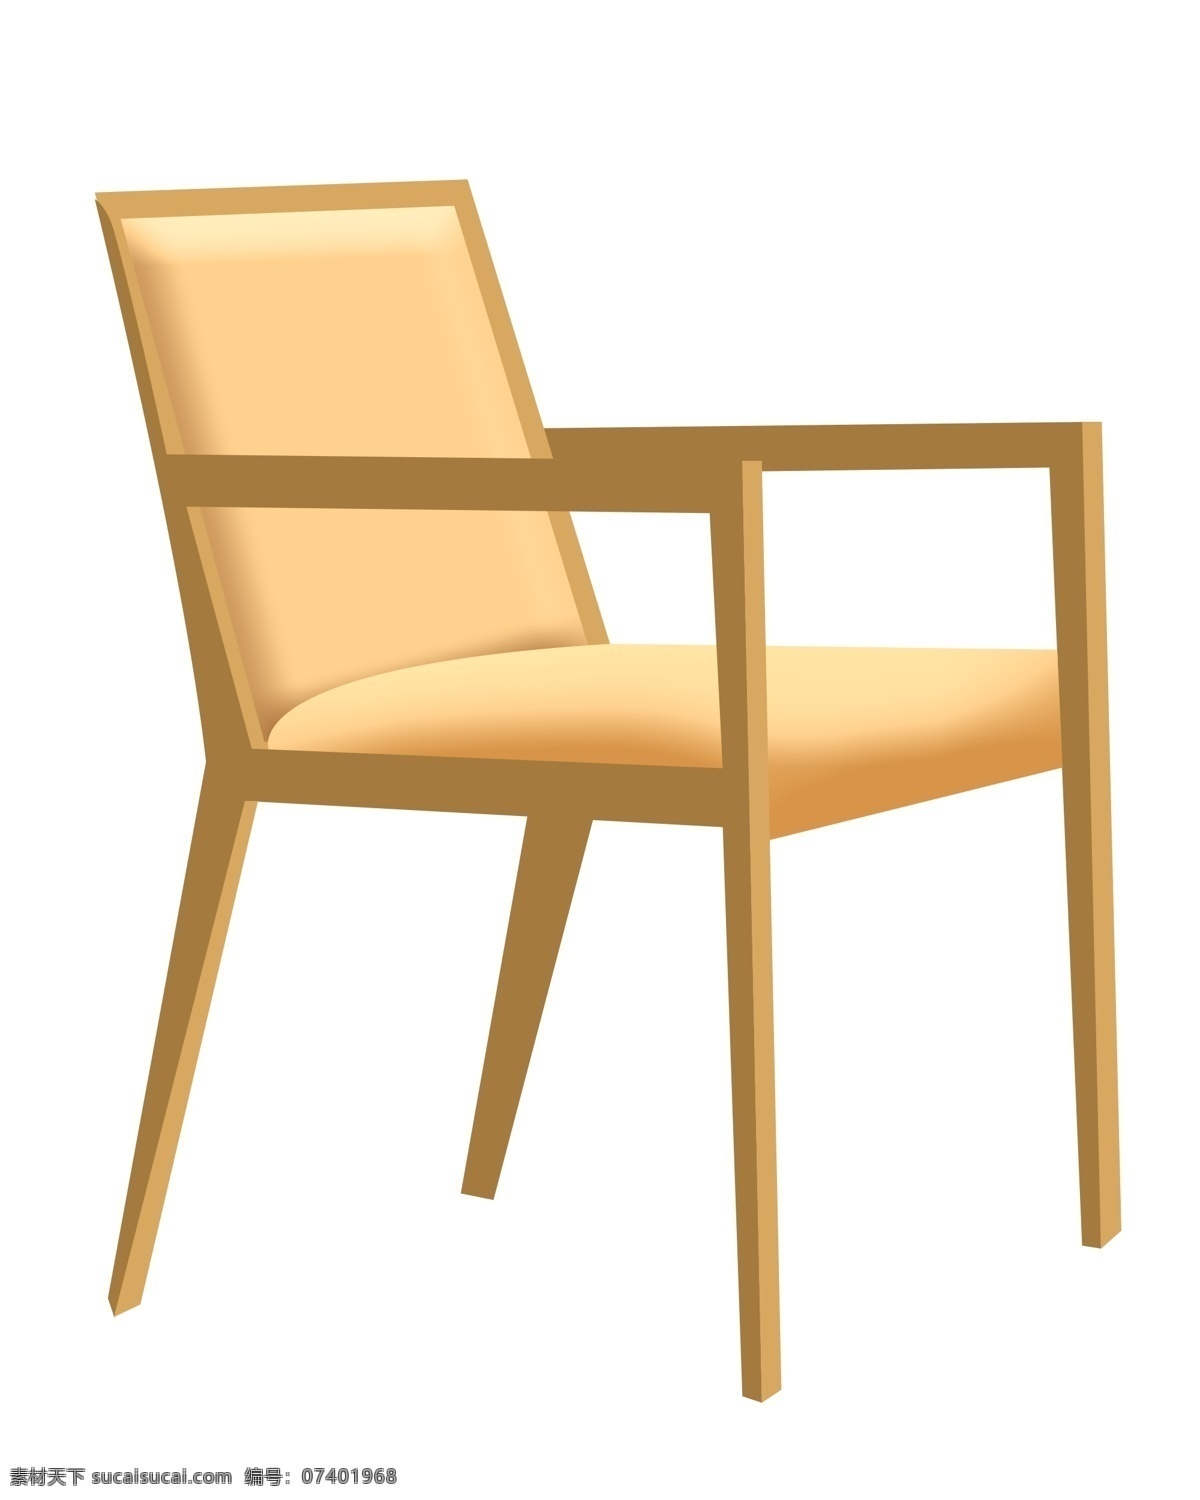 卡通 木质 椅子 插图 舒适的椅子 卡通椅子 木质椅子 靠背椅子 家具 椅子家具 一把实木椅子